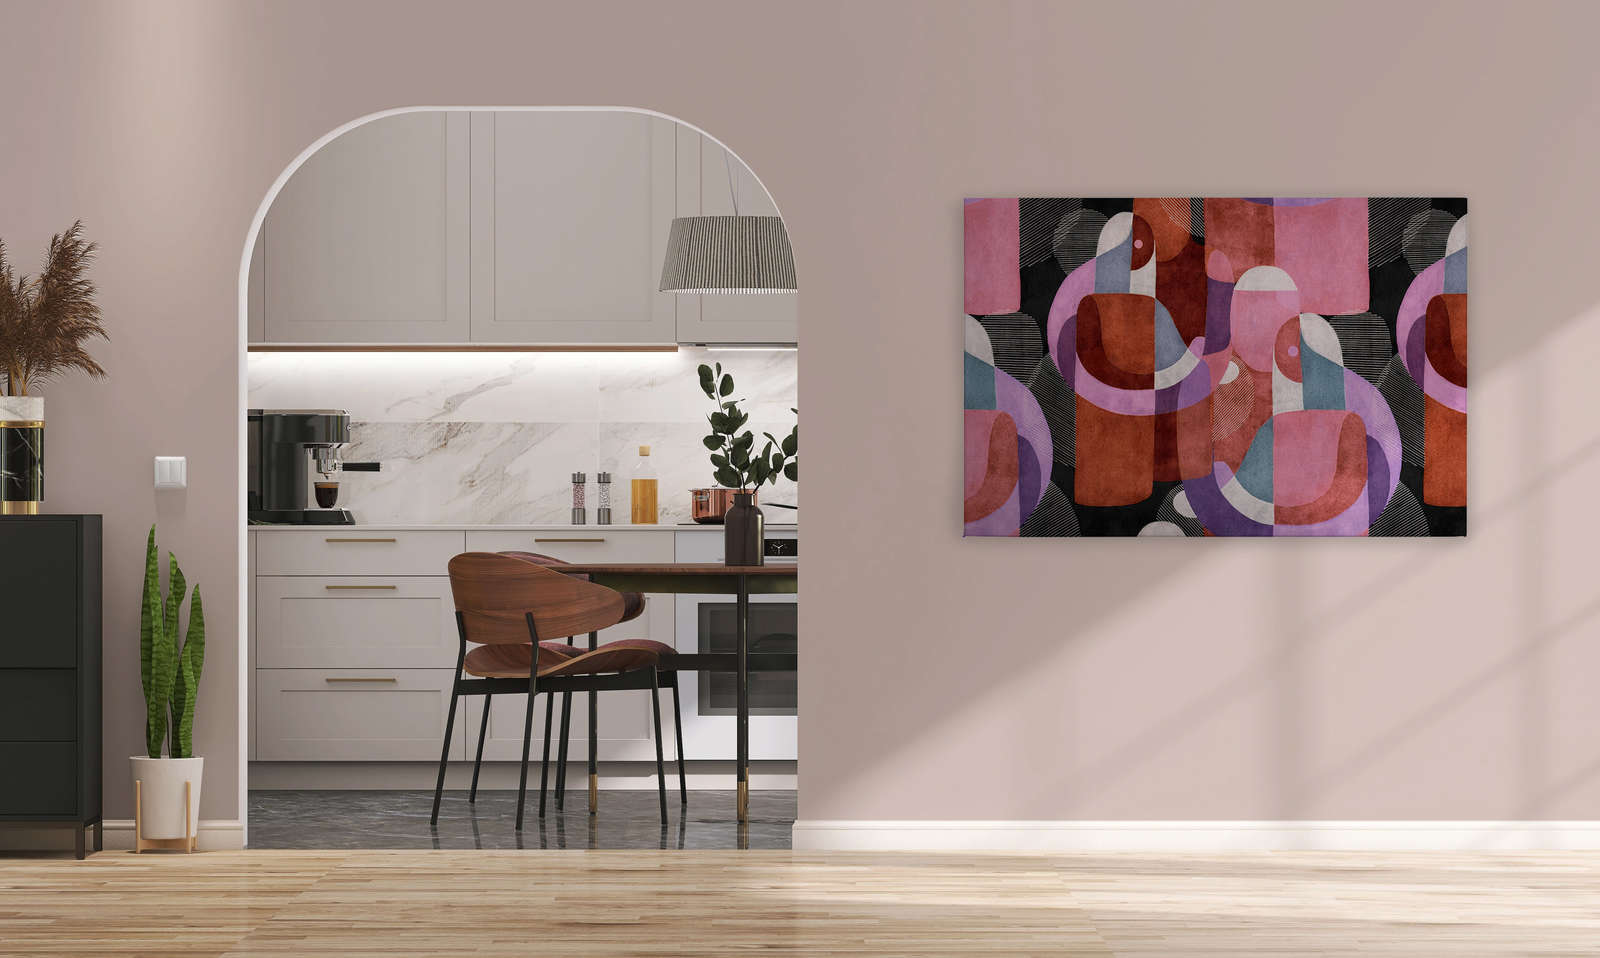             Meeting Place 2 - toile design abstrait ethnique noir & rose - 1,20 m x 0,80 m
        